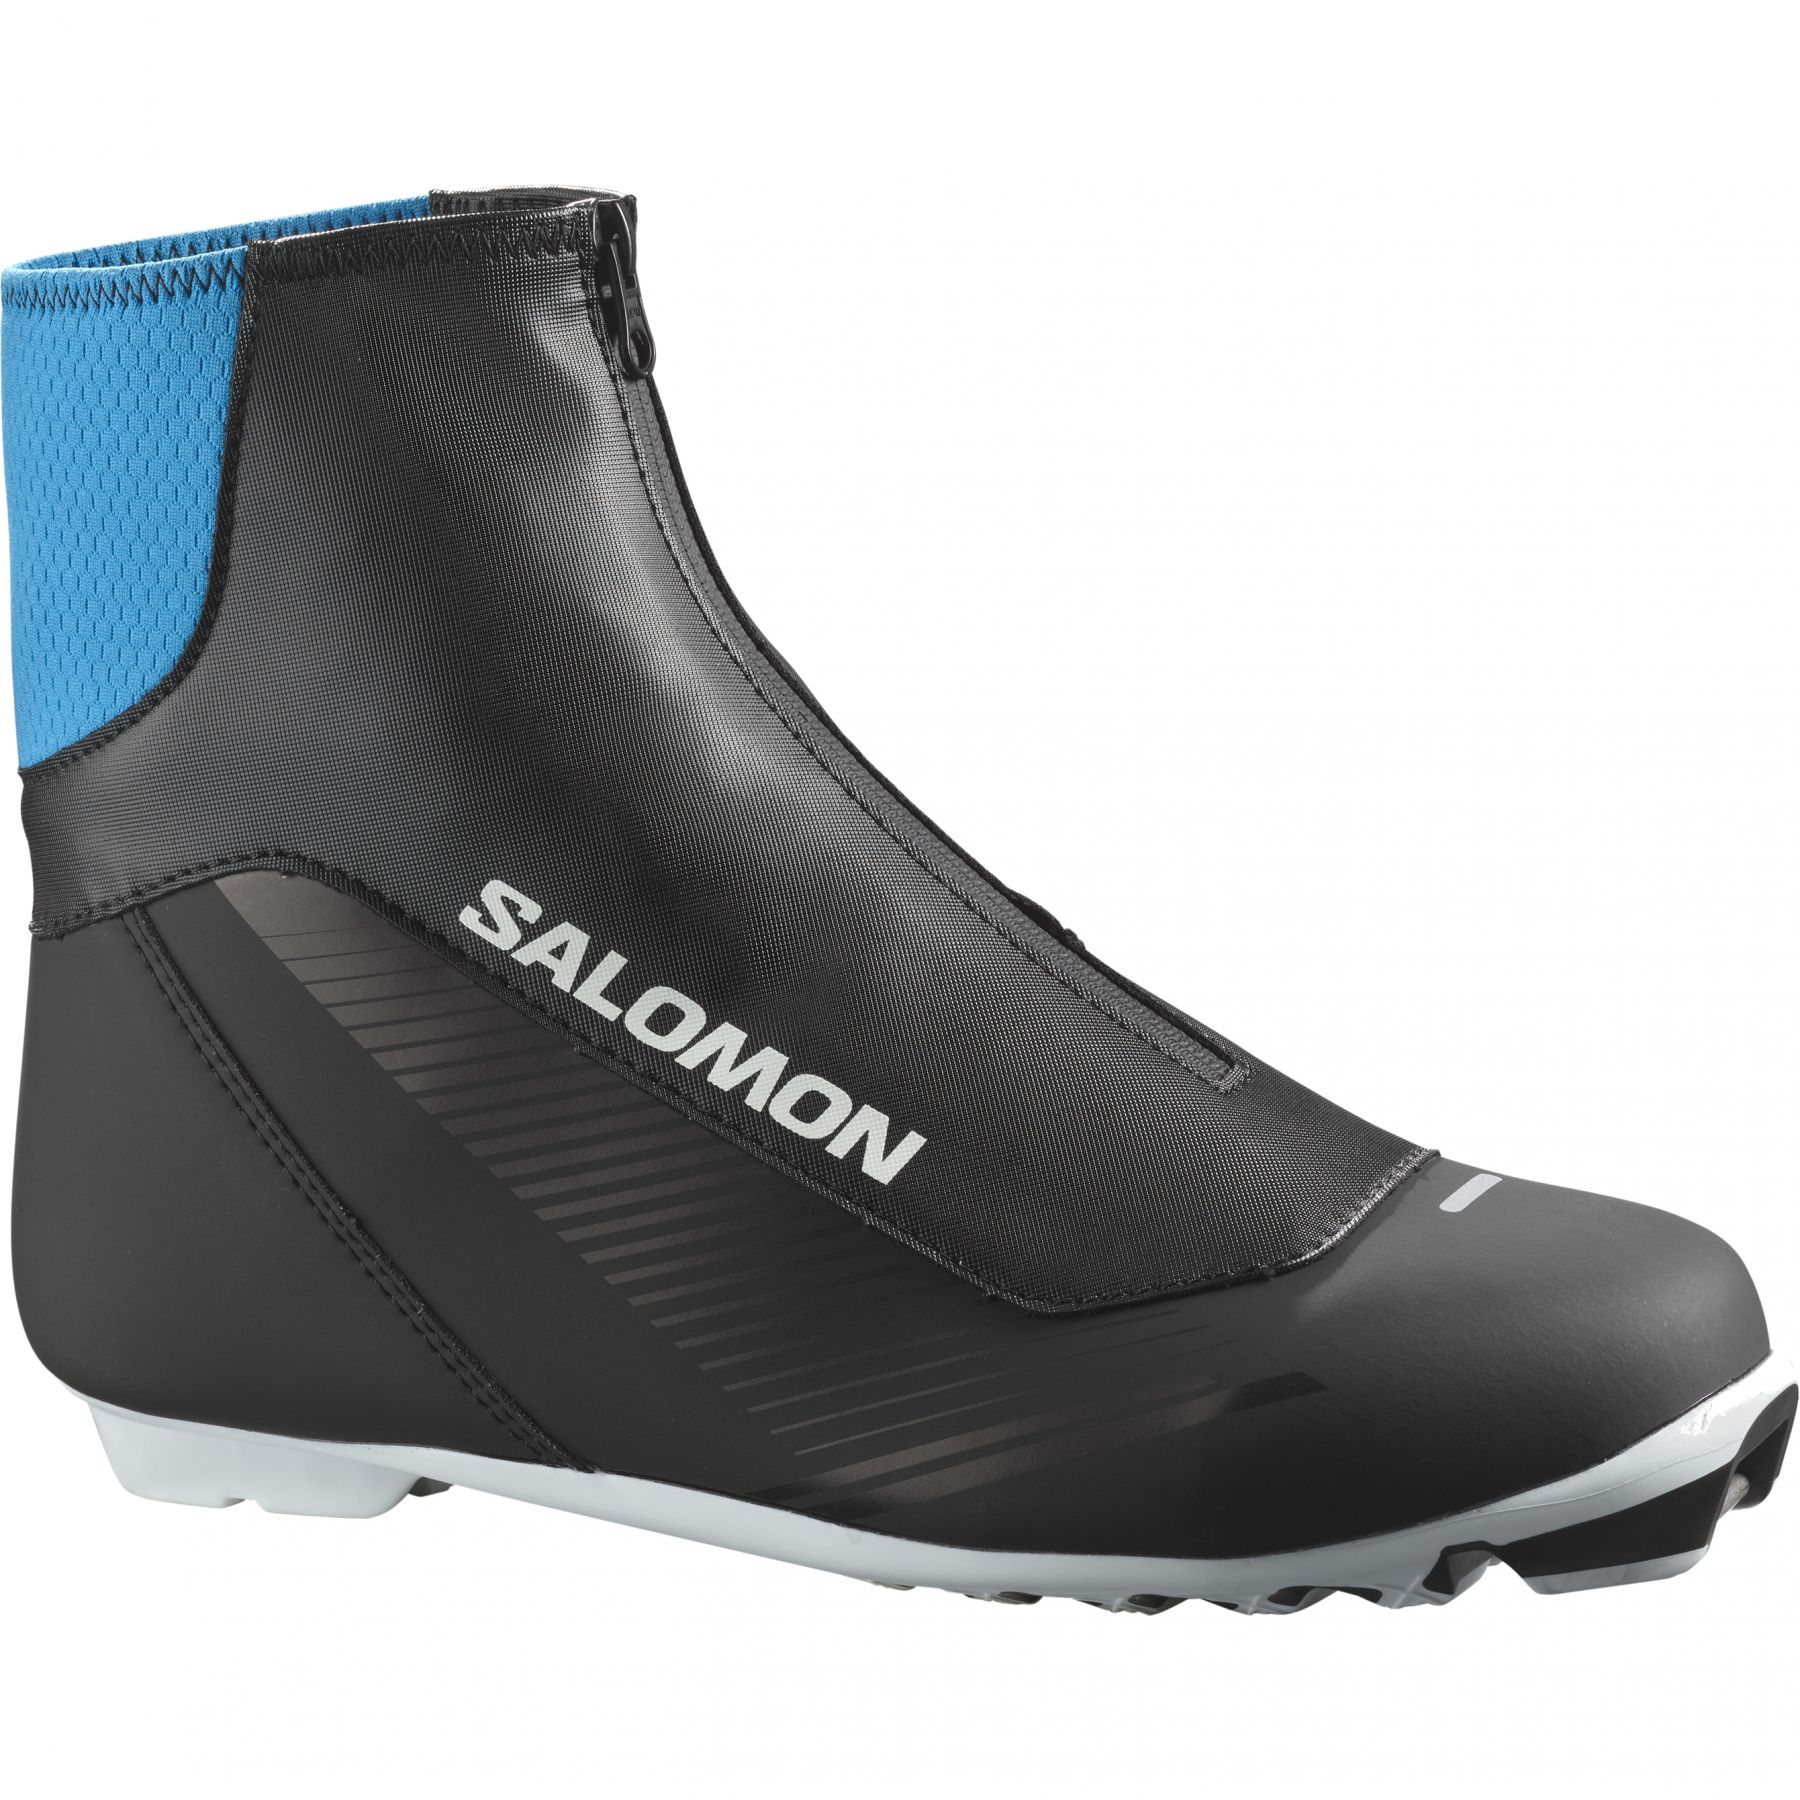 Brug Salomon RC7 Prolink, langrendsstøvler, sort til en forbedret oplevelse